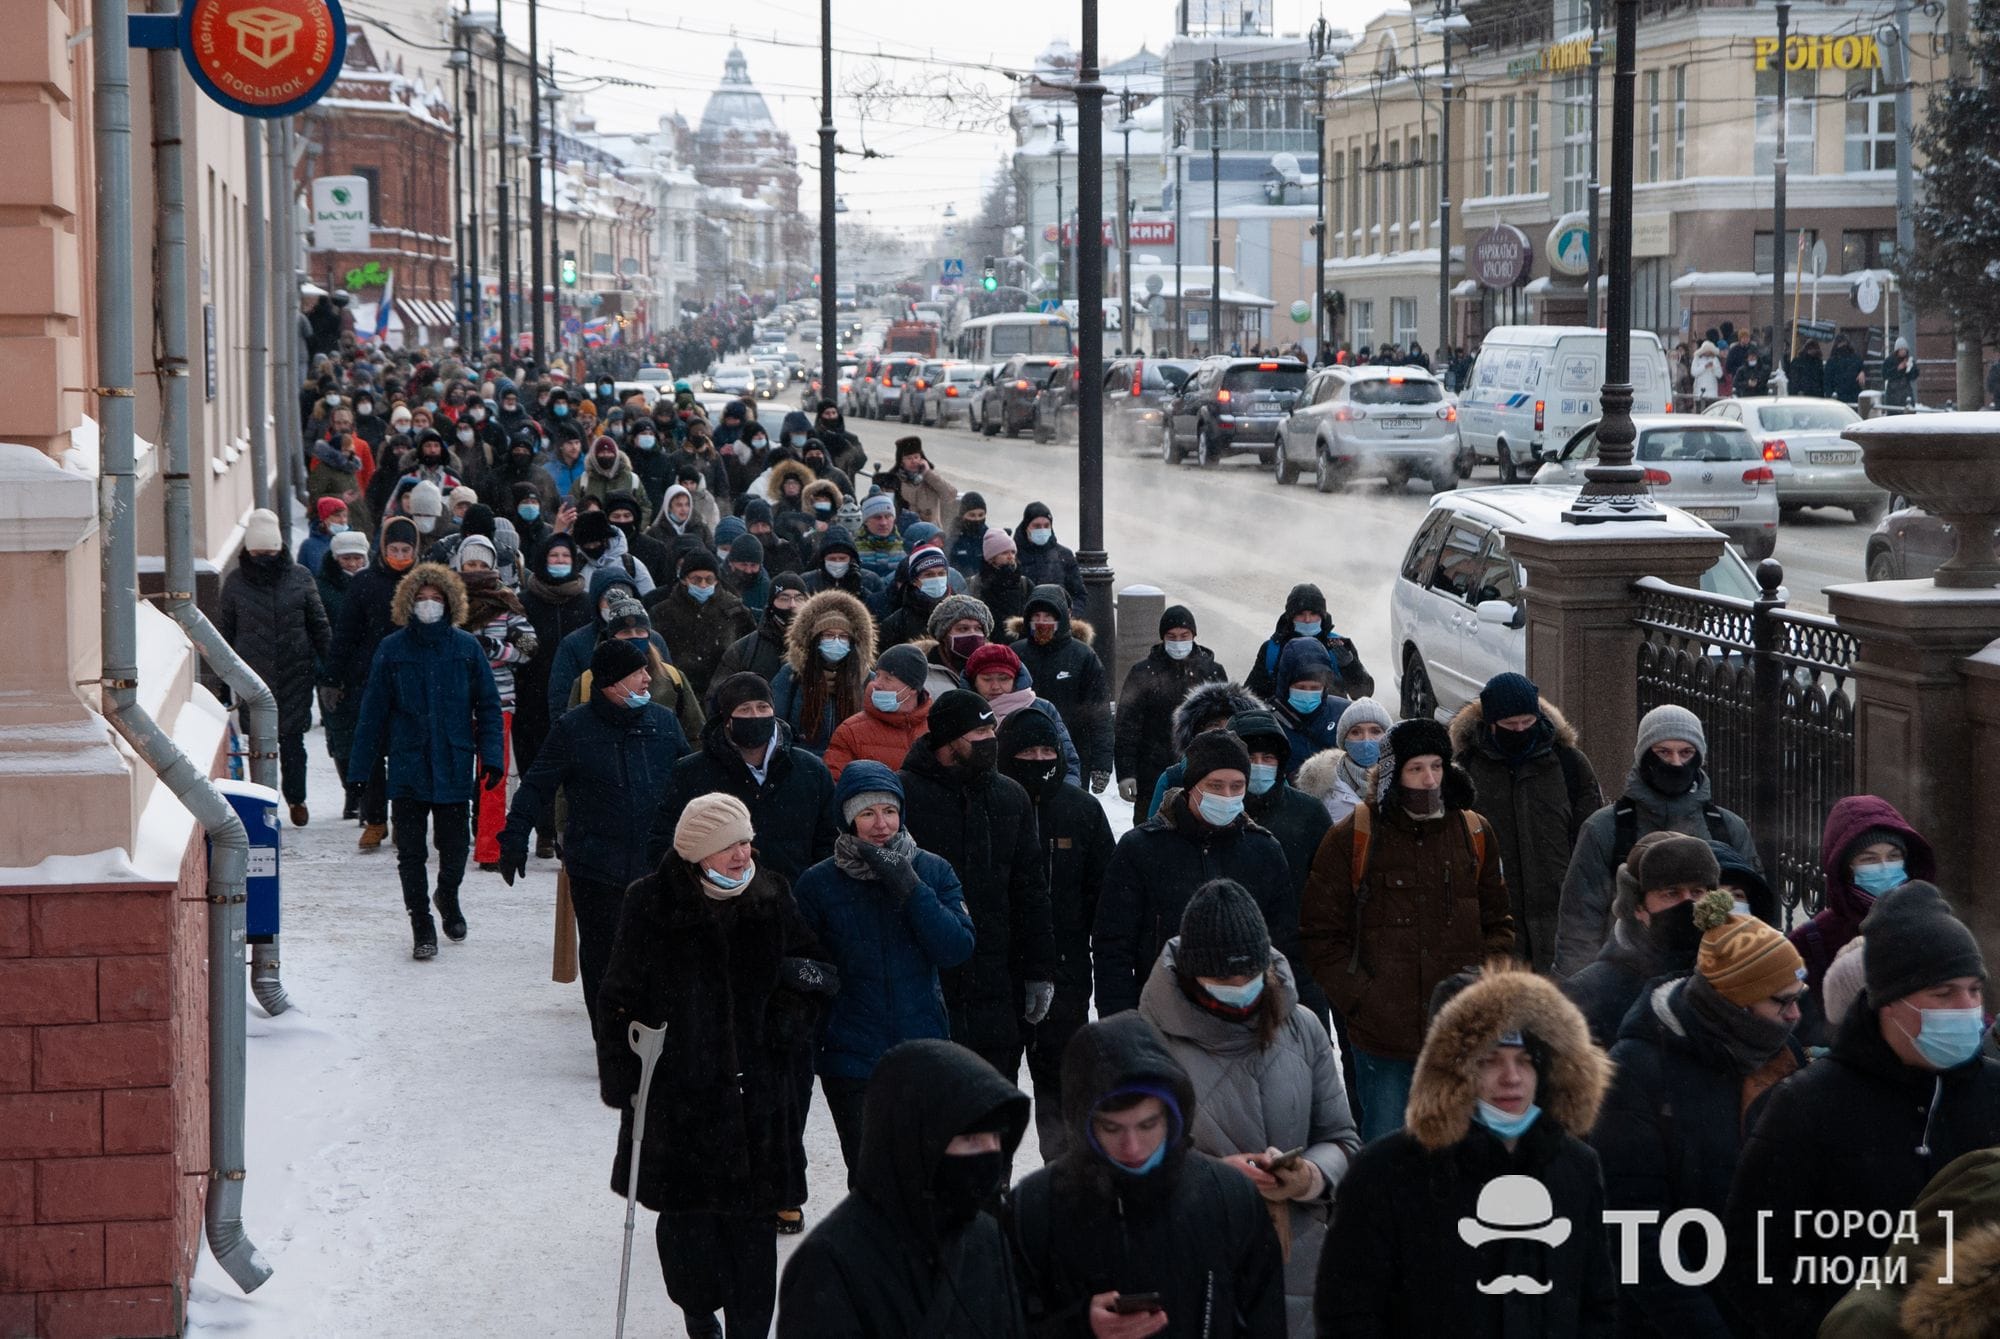 Власть, Город, Политика, События, Фото недели, Навальный томск шествие митинг фадеева задержание массовое участие 23 января: Как в Томске проходила акция в поддержку Навального